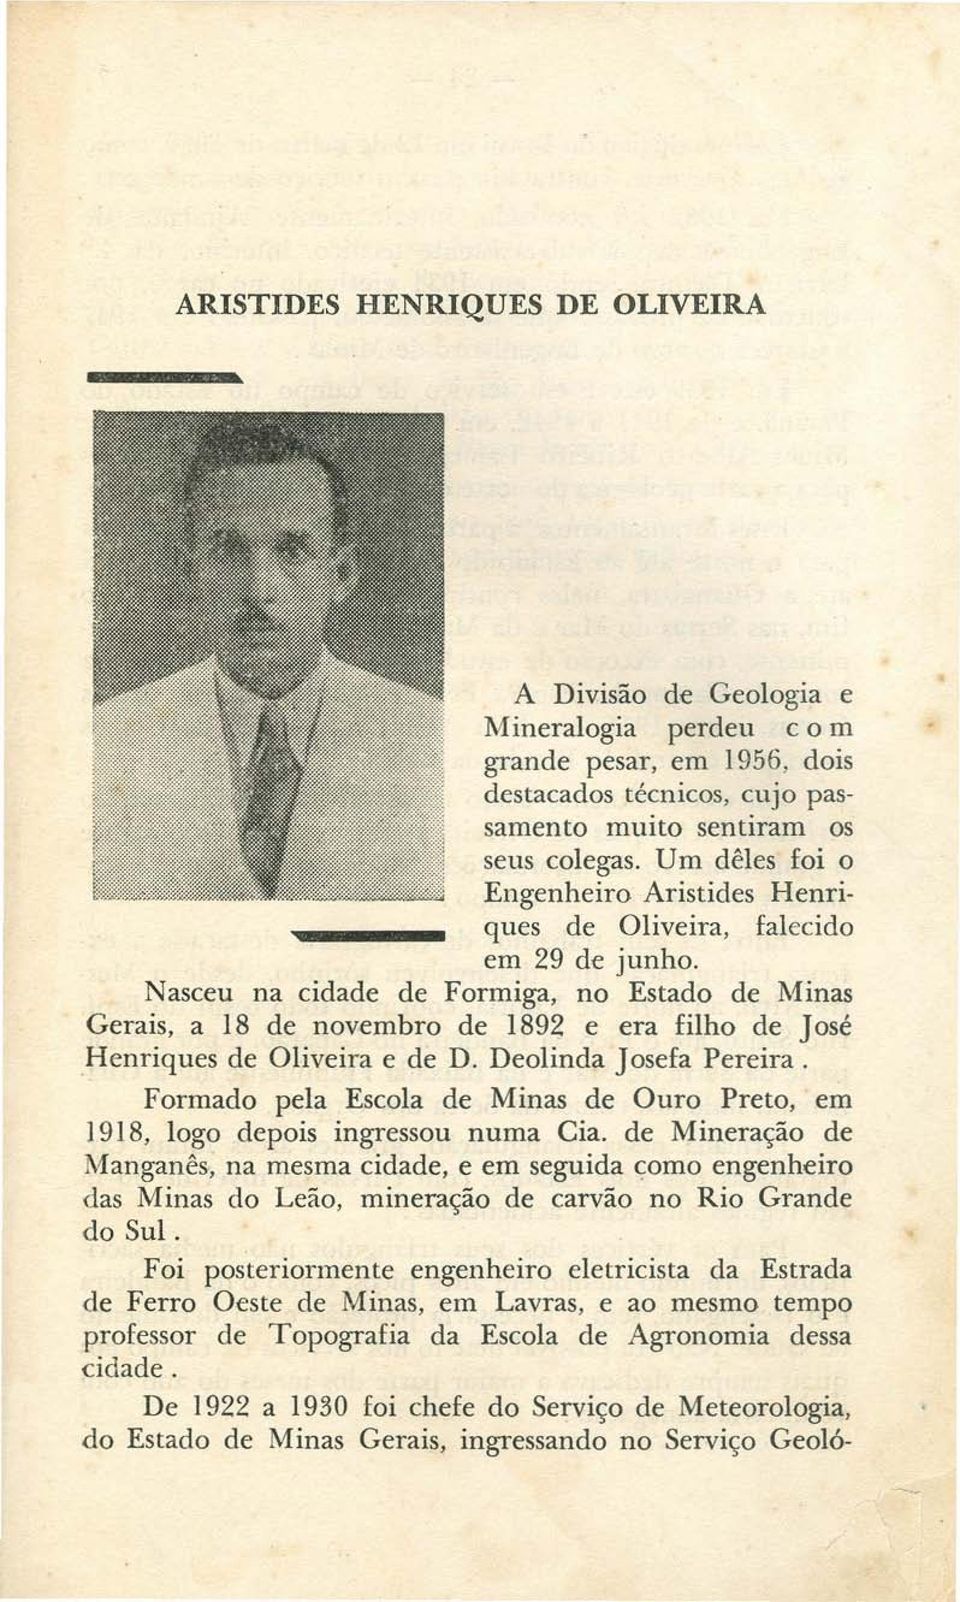 Nasceu na cidade de Formiga, no Estado de Minas Gerais, a 18 de novembro de 1892 e era filho de José Henriques de Oliveira e de D. Deolinda Josefa Pereira.